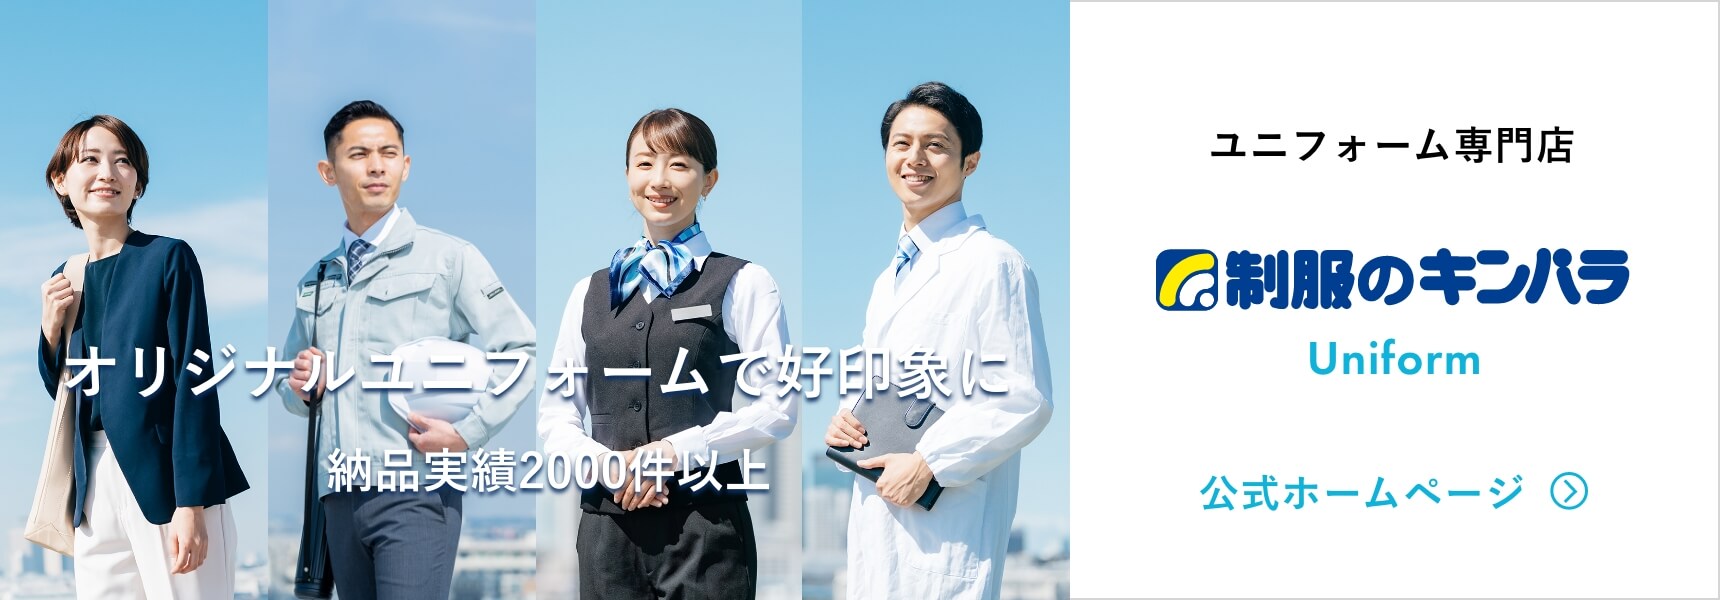 ユニフォーム専門店 制服のキンパラ Uniform 公式サイト